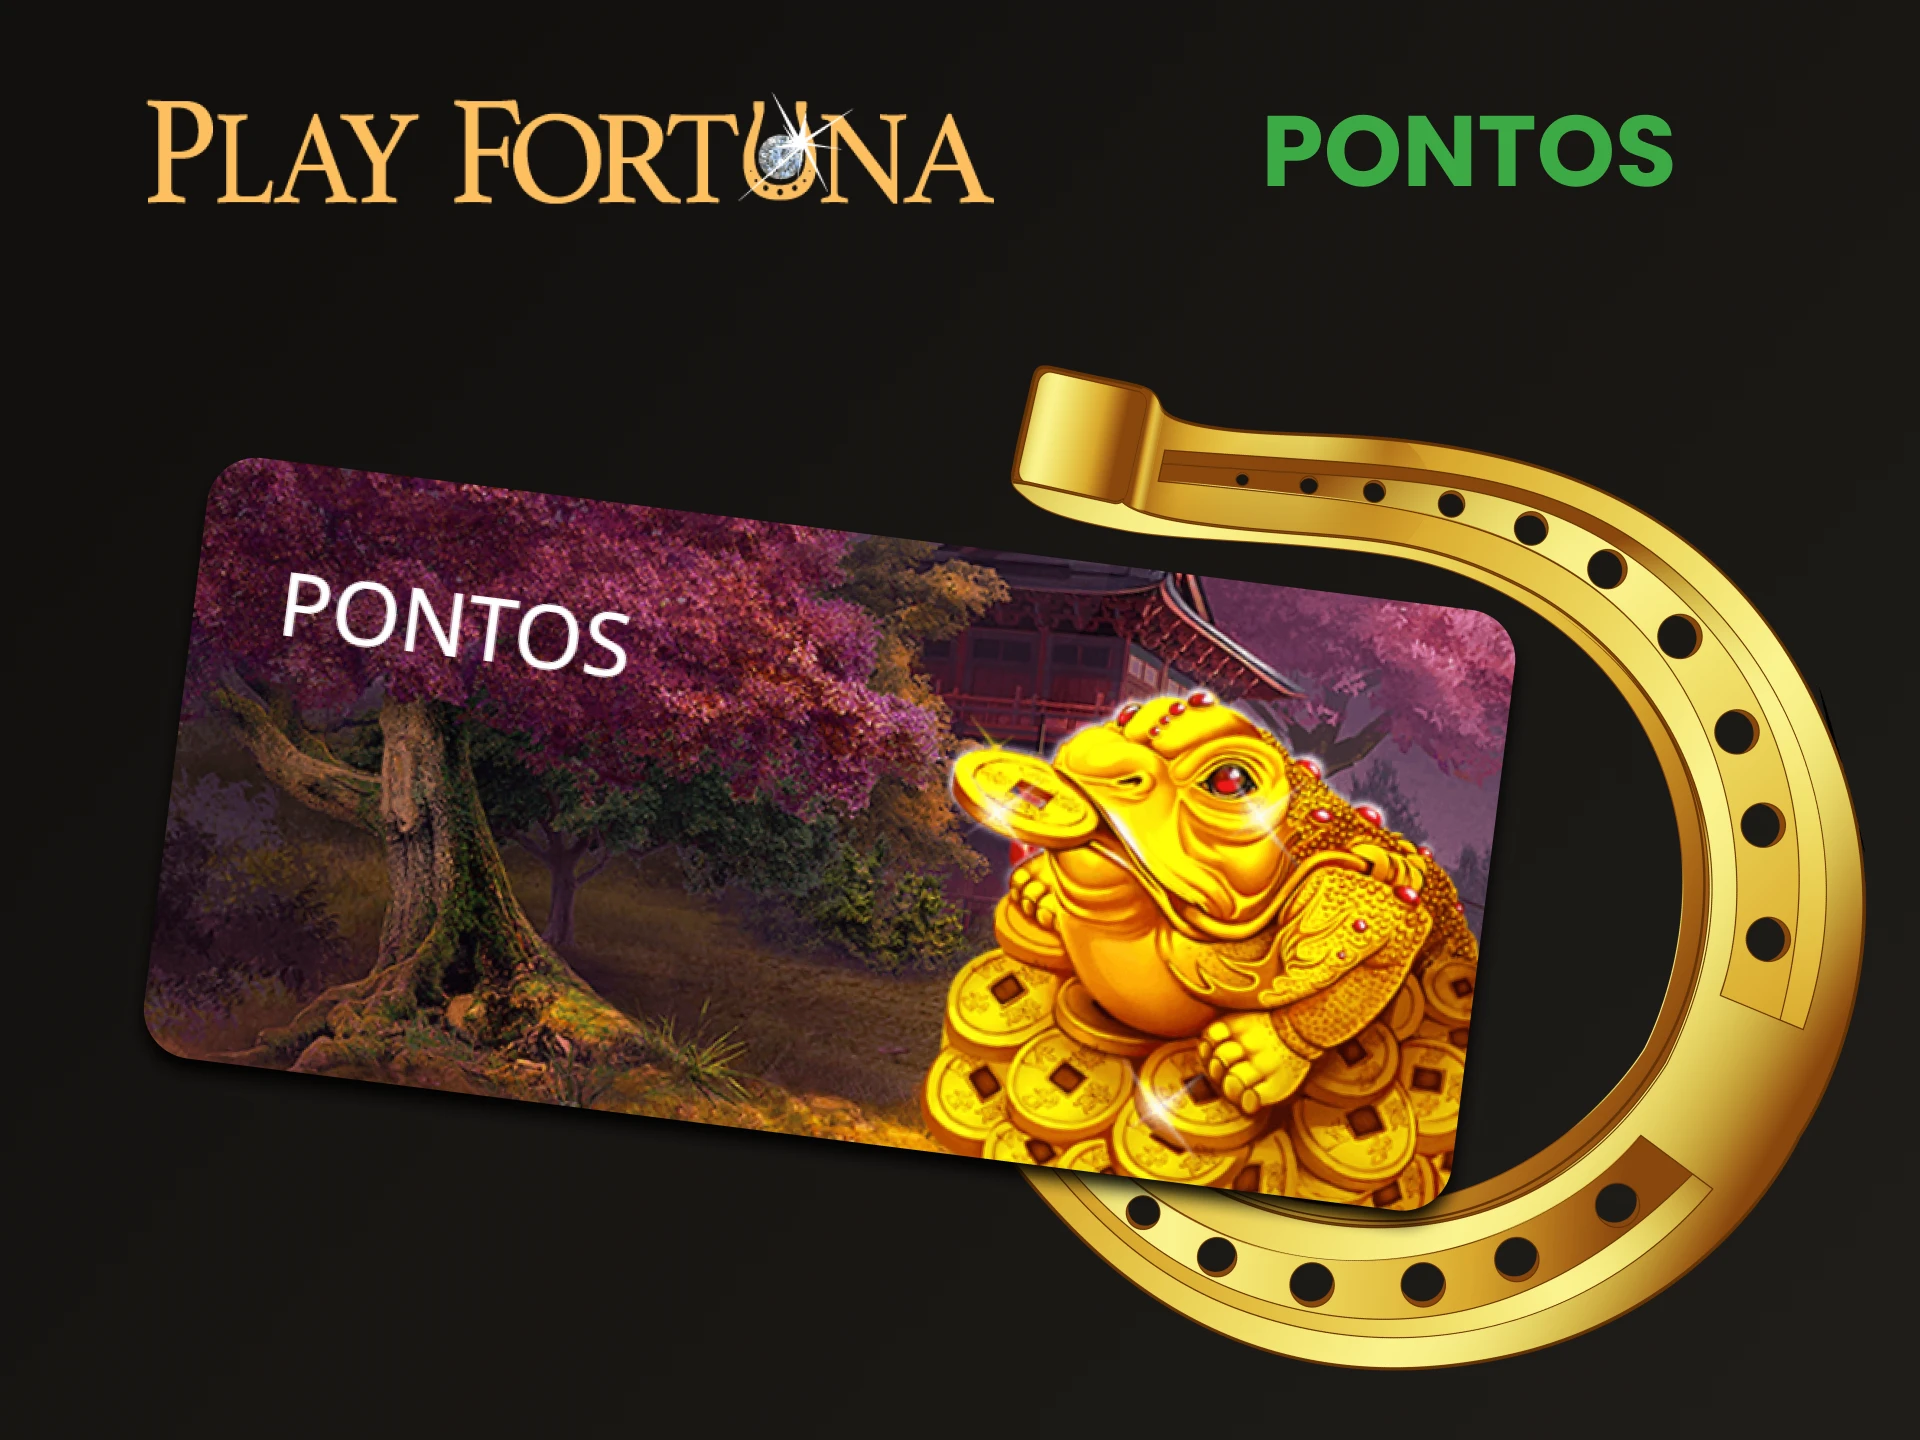 Ganhe um bônus especial para jogos do Play Fortuna.